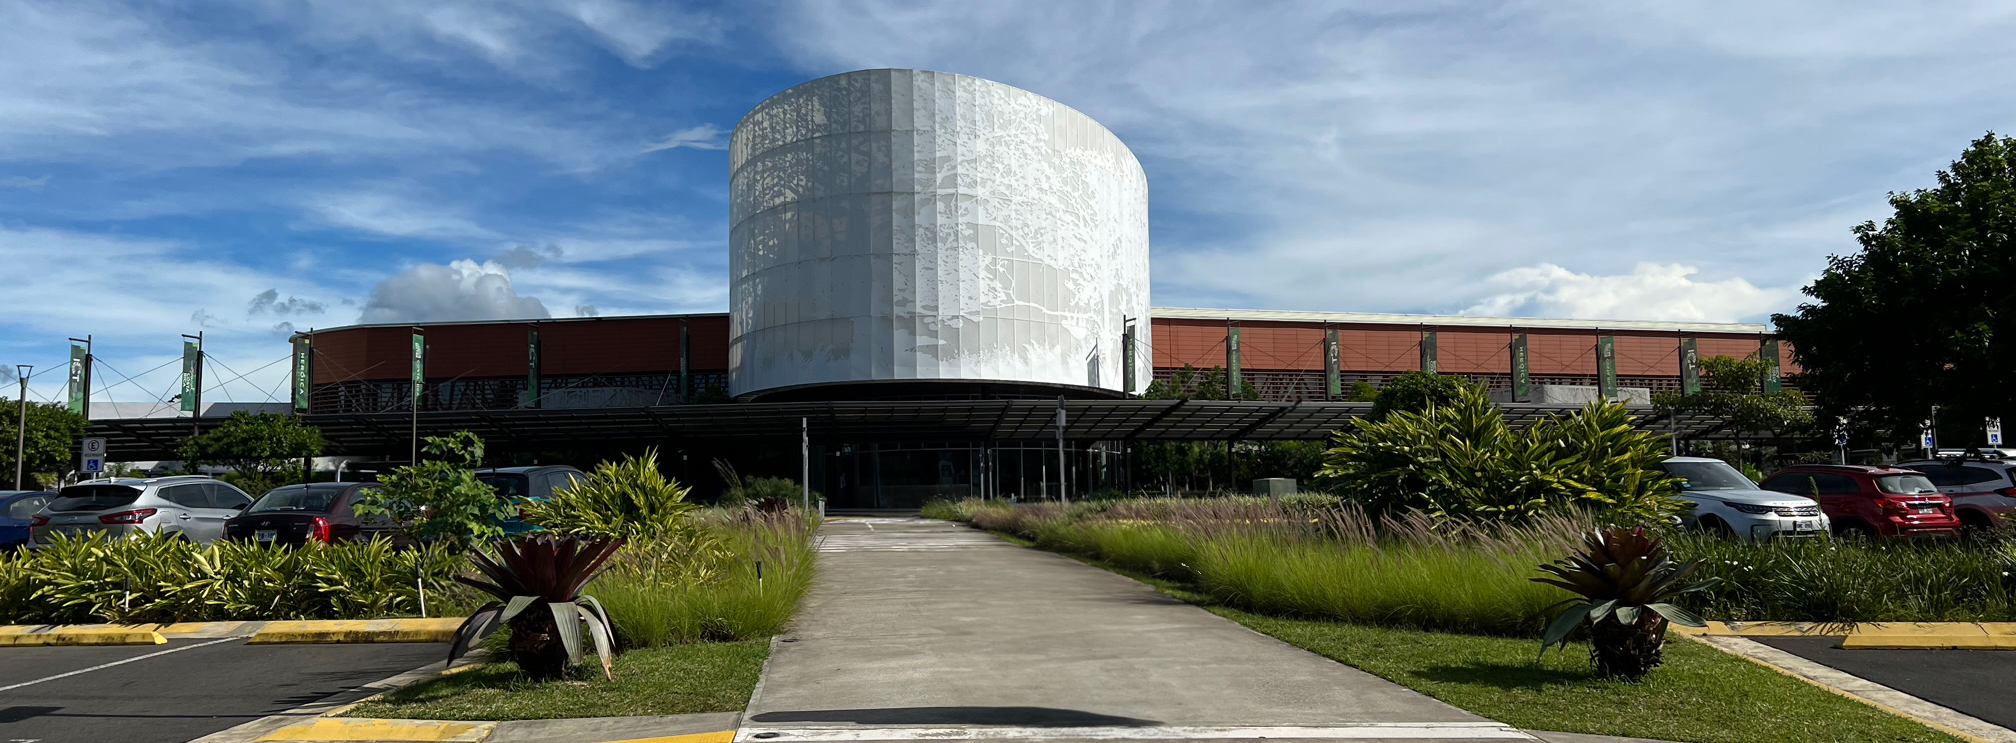 Costa Rica Convention Center